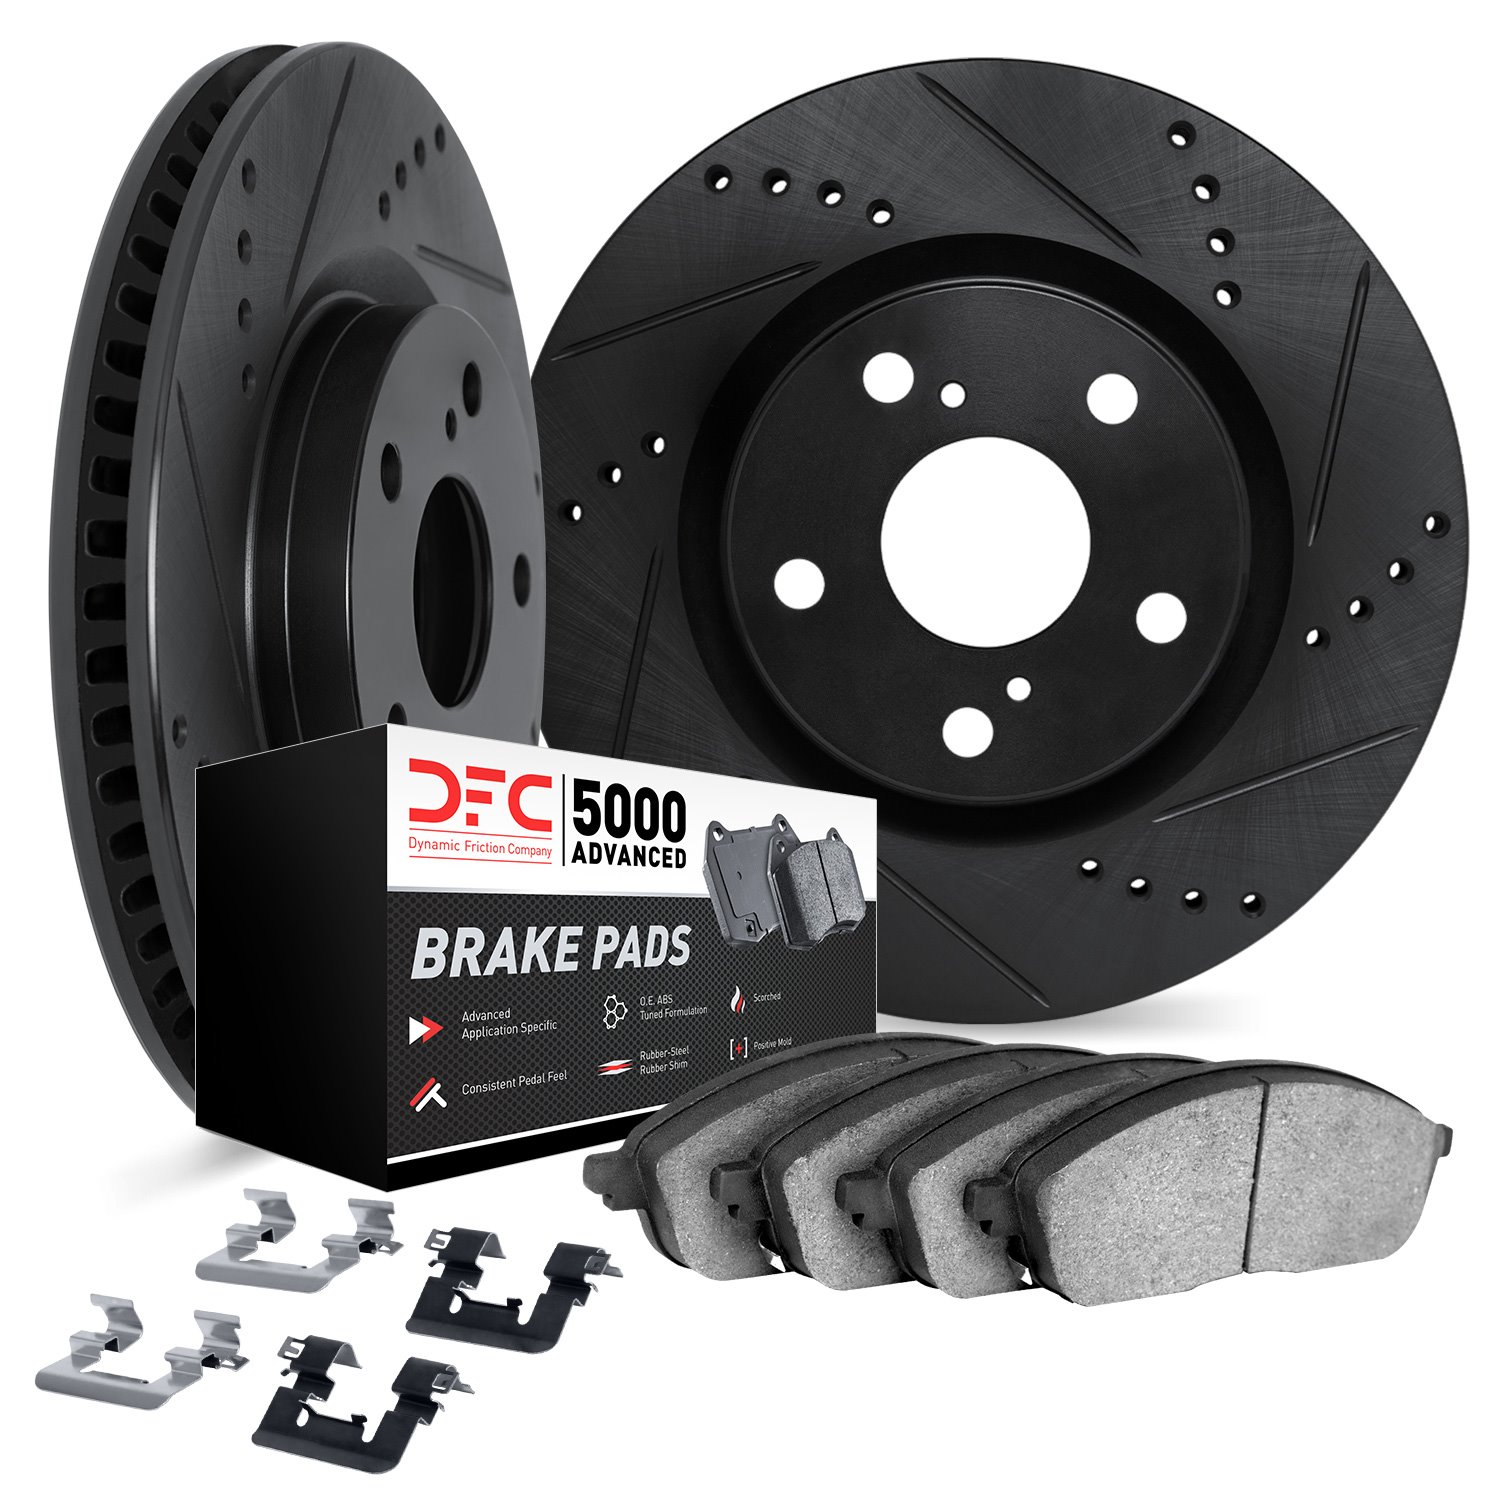 8512-42026 Drilled/Slotted Brake Rotors w/5000 Advanced Brake Pads Kit & Hardware [Black], 2005-2010 Mopar, Position: Front